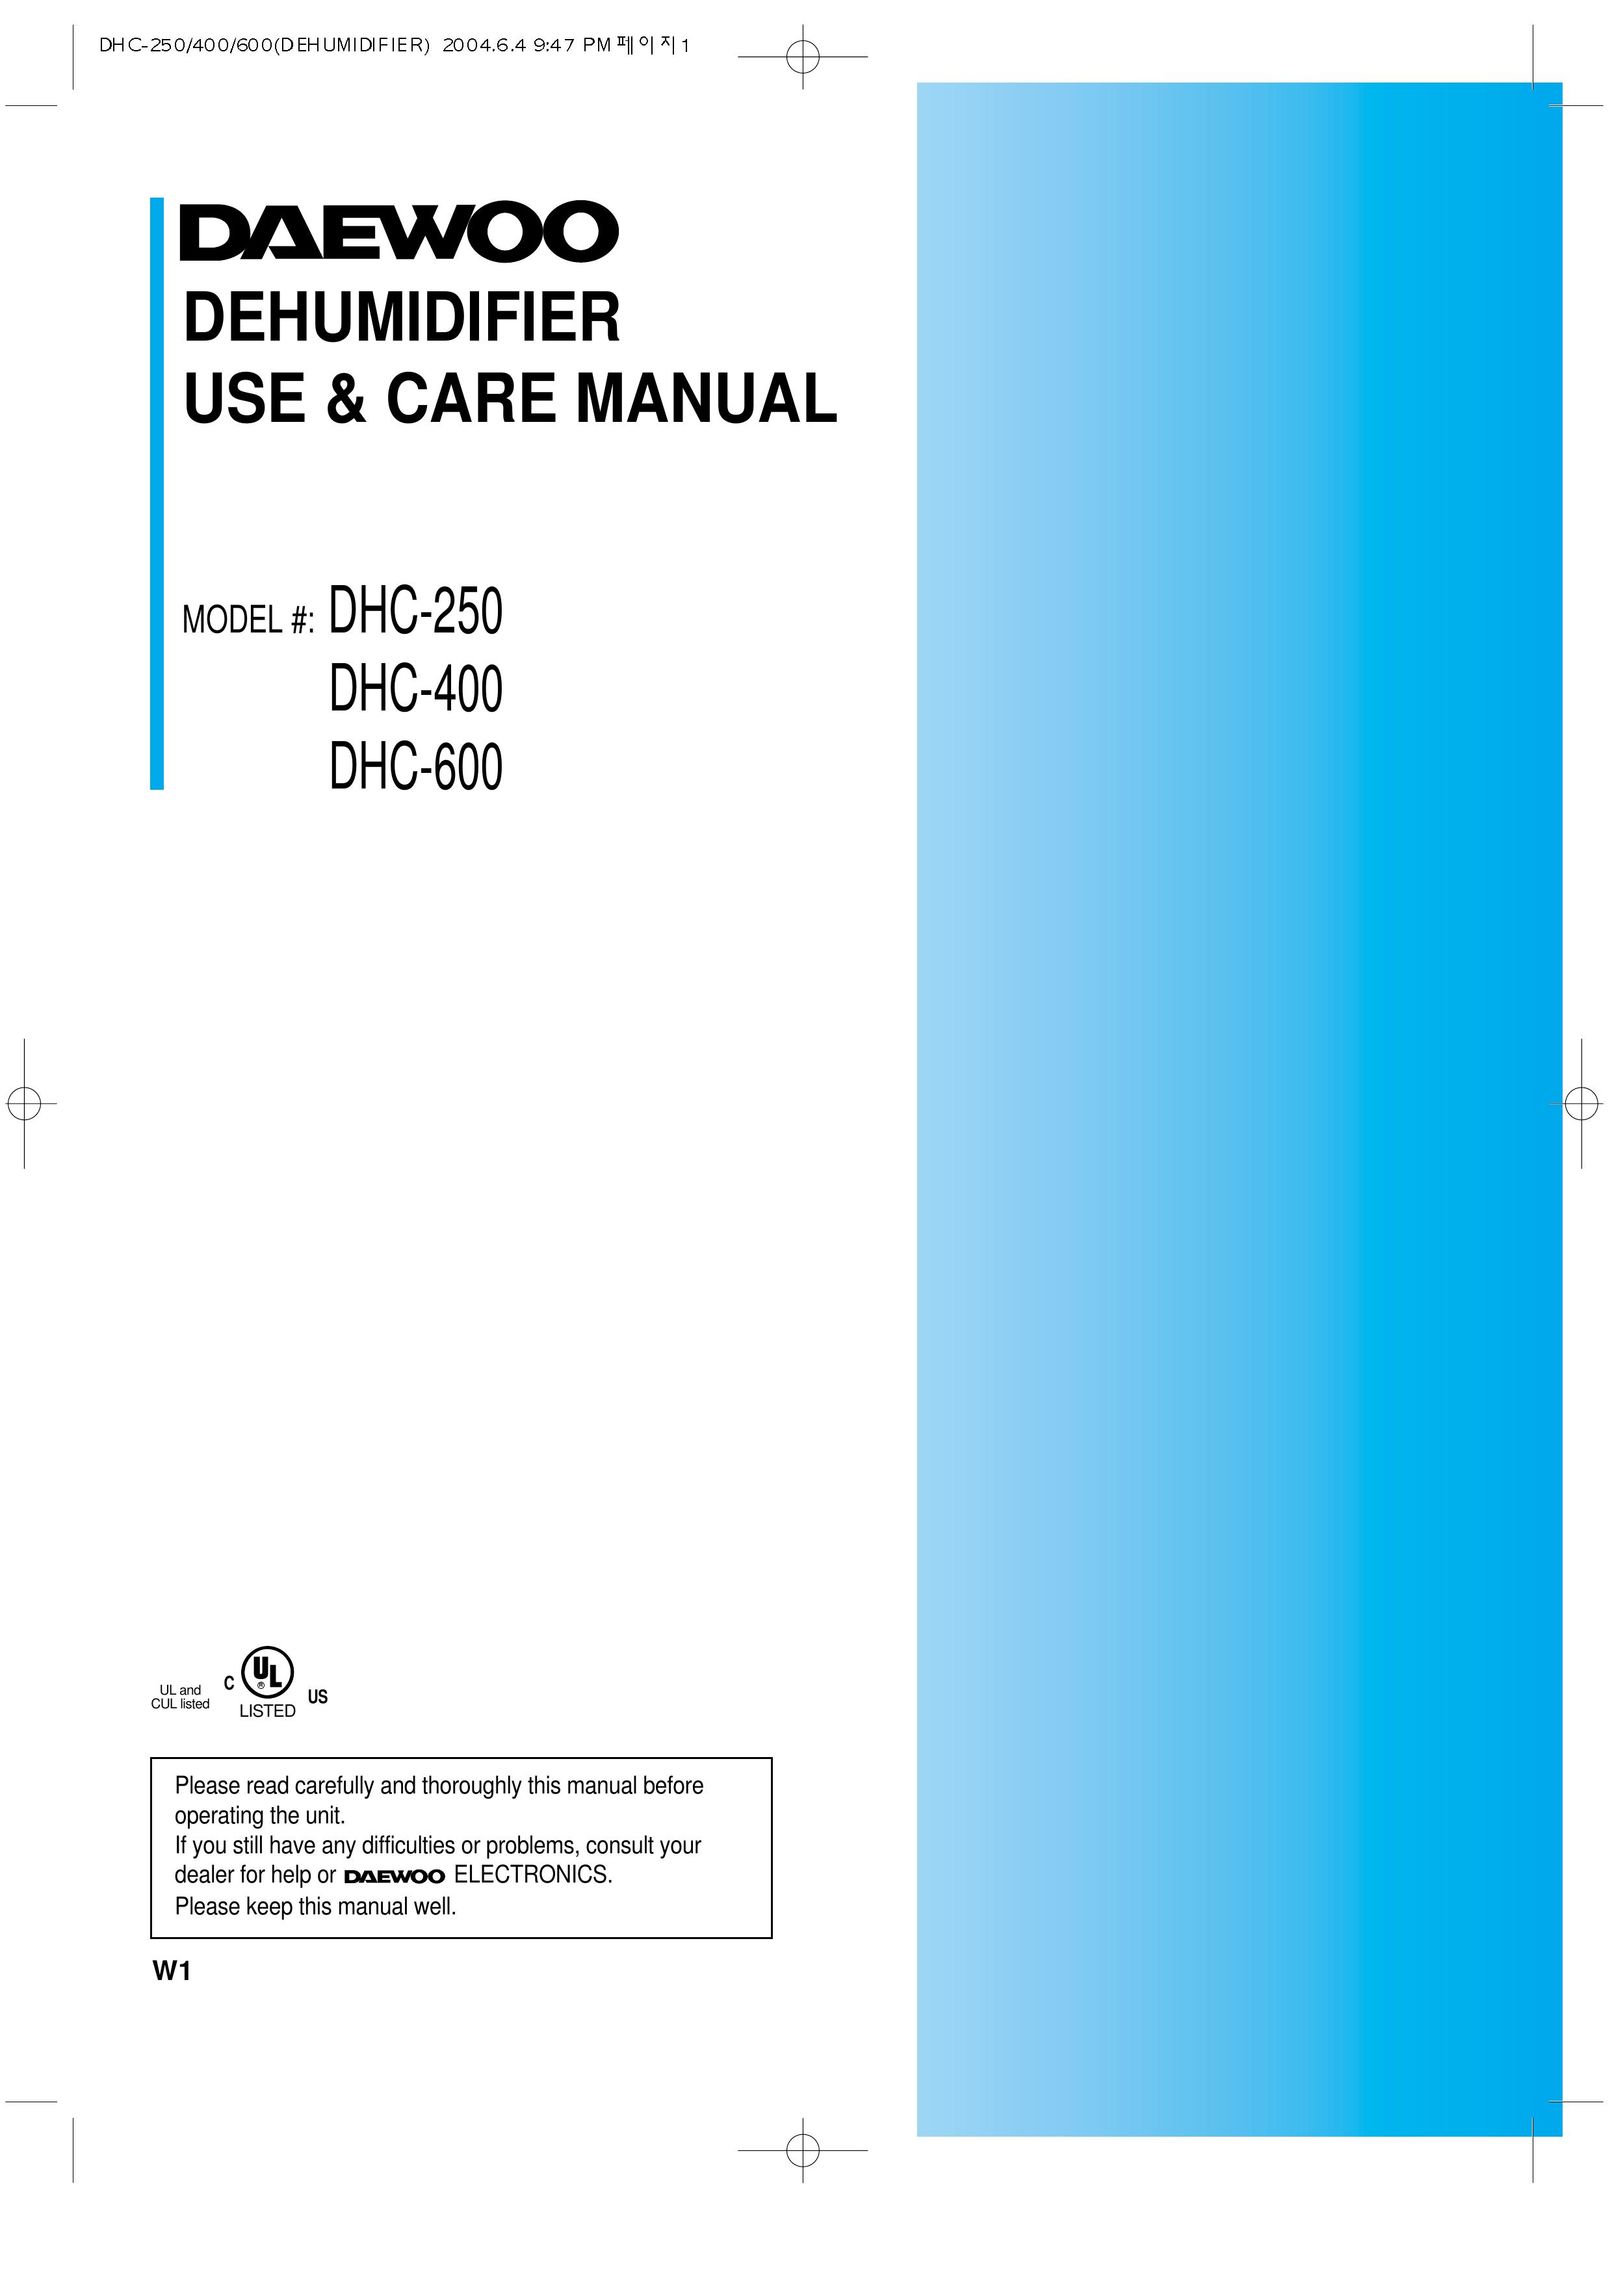 Daewoo DHC-600 Dehumidifier User Manual